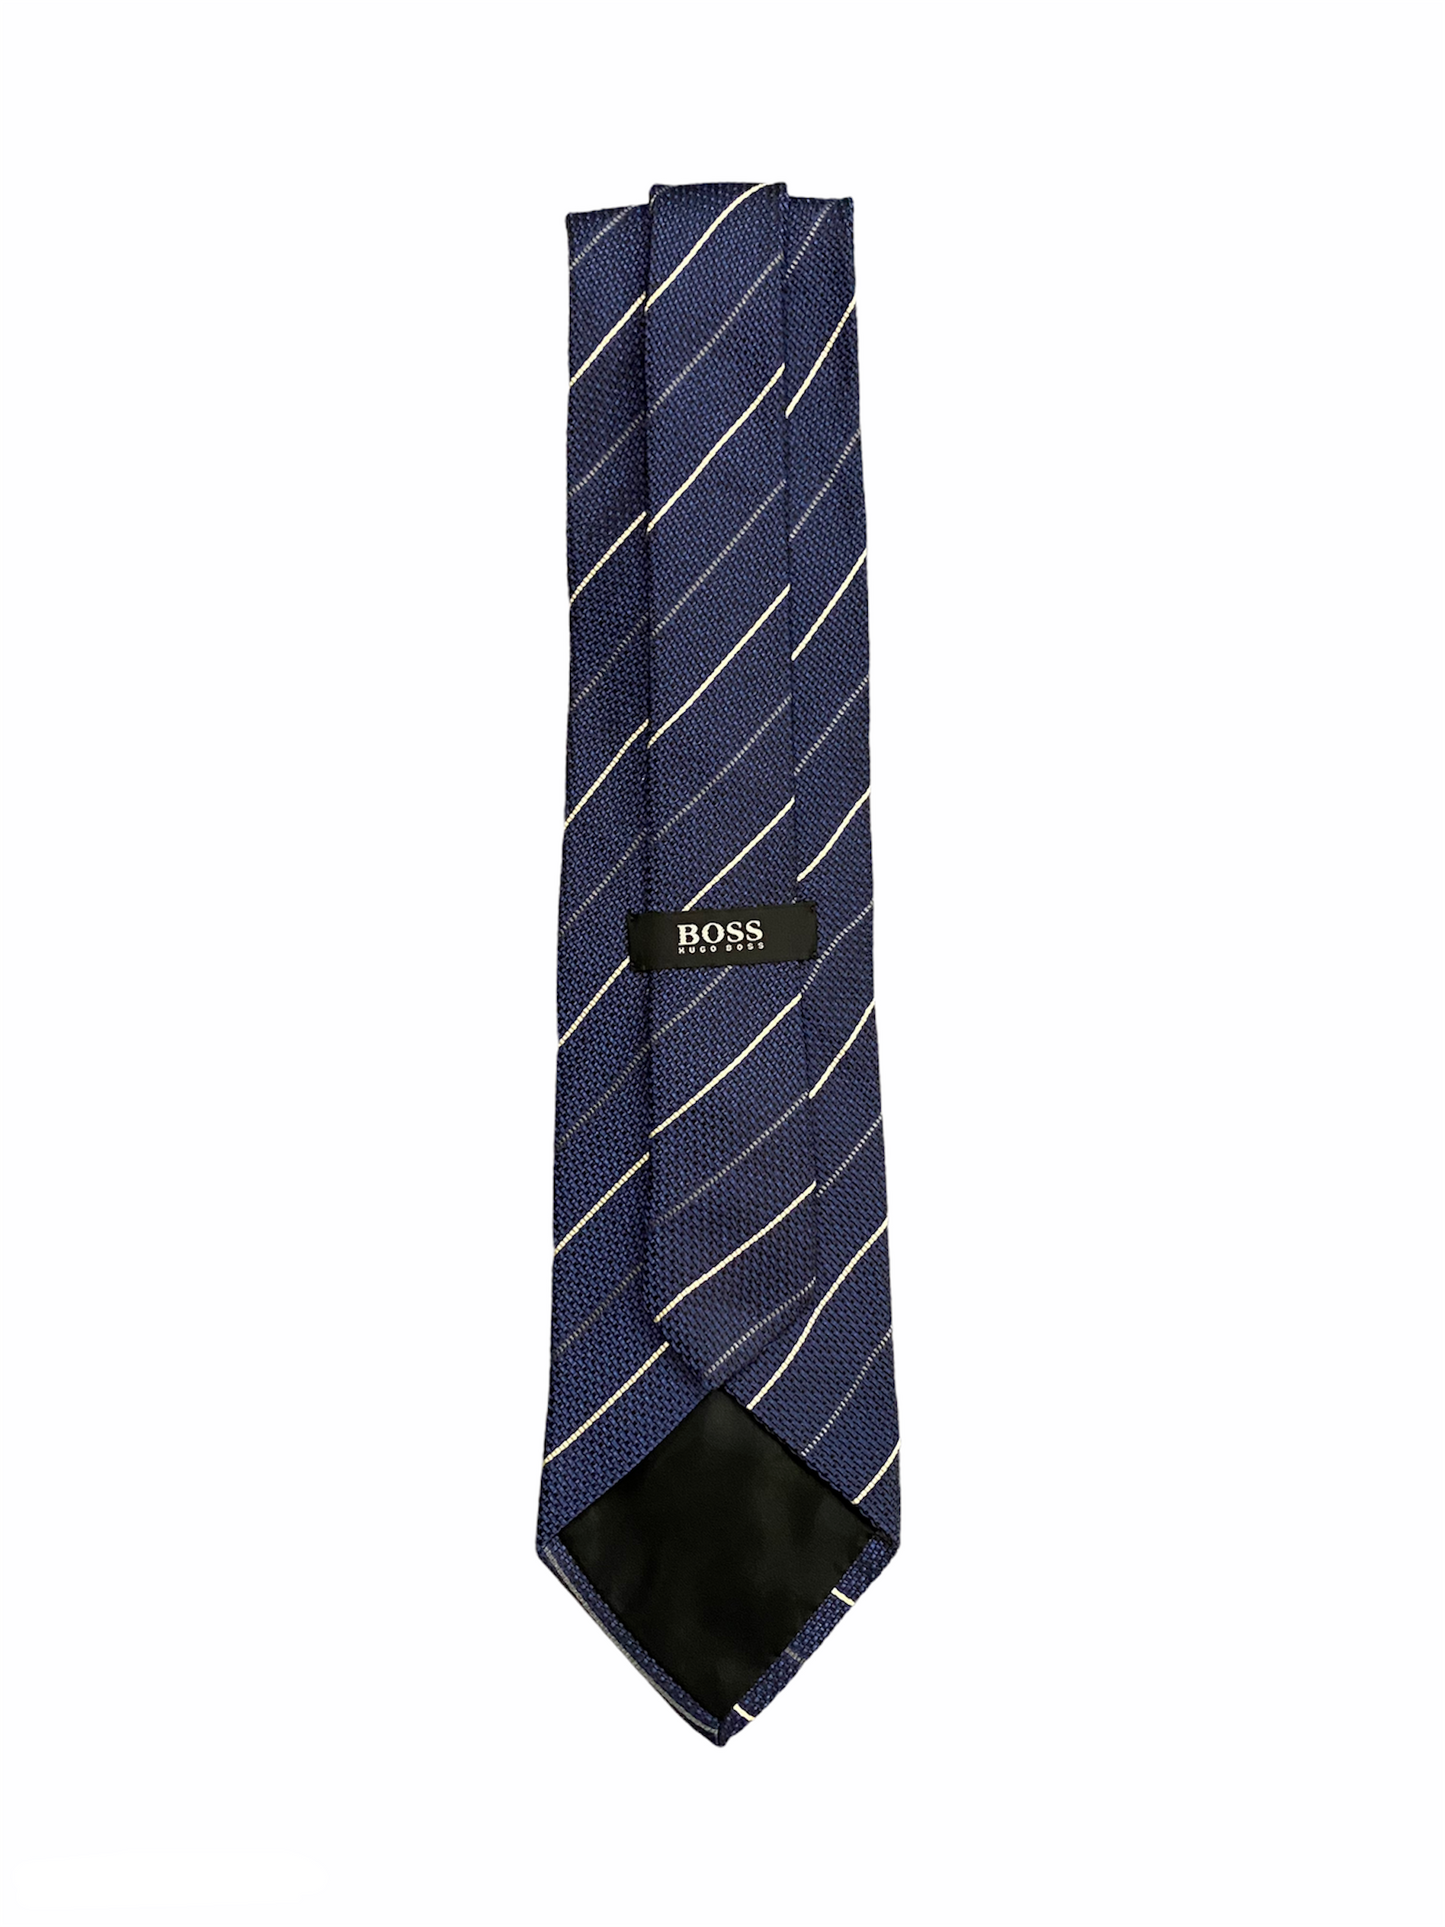 Cravate Hugo Boss bleu à rayures